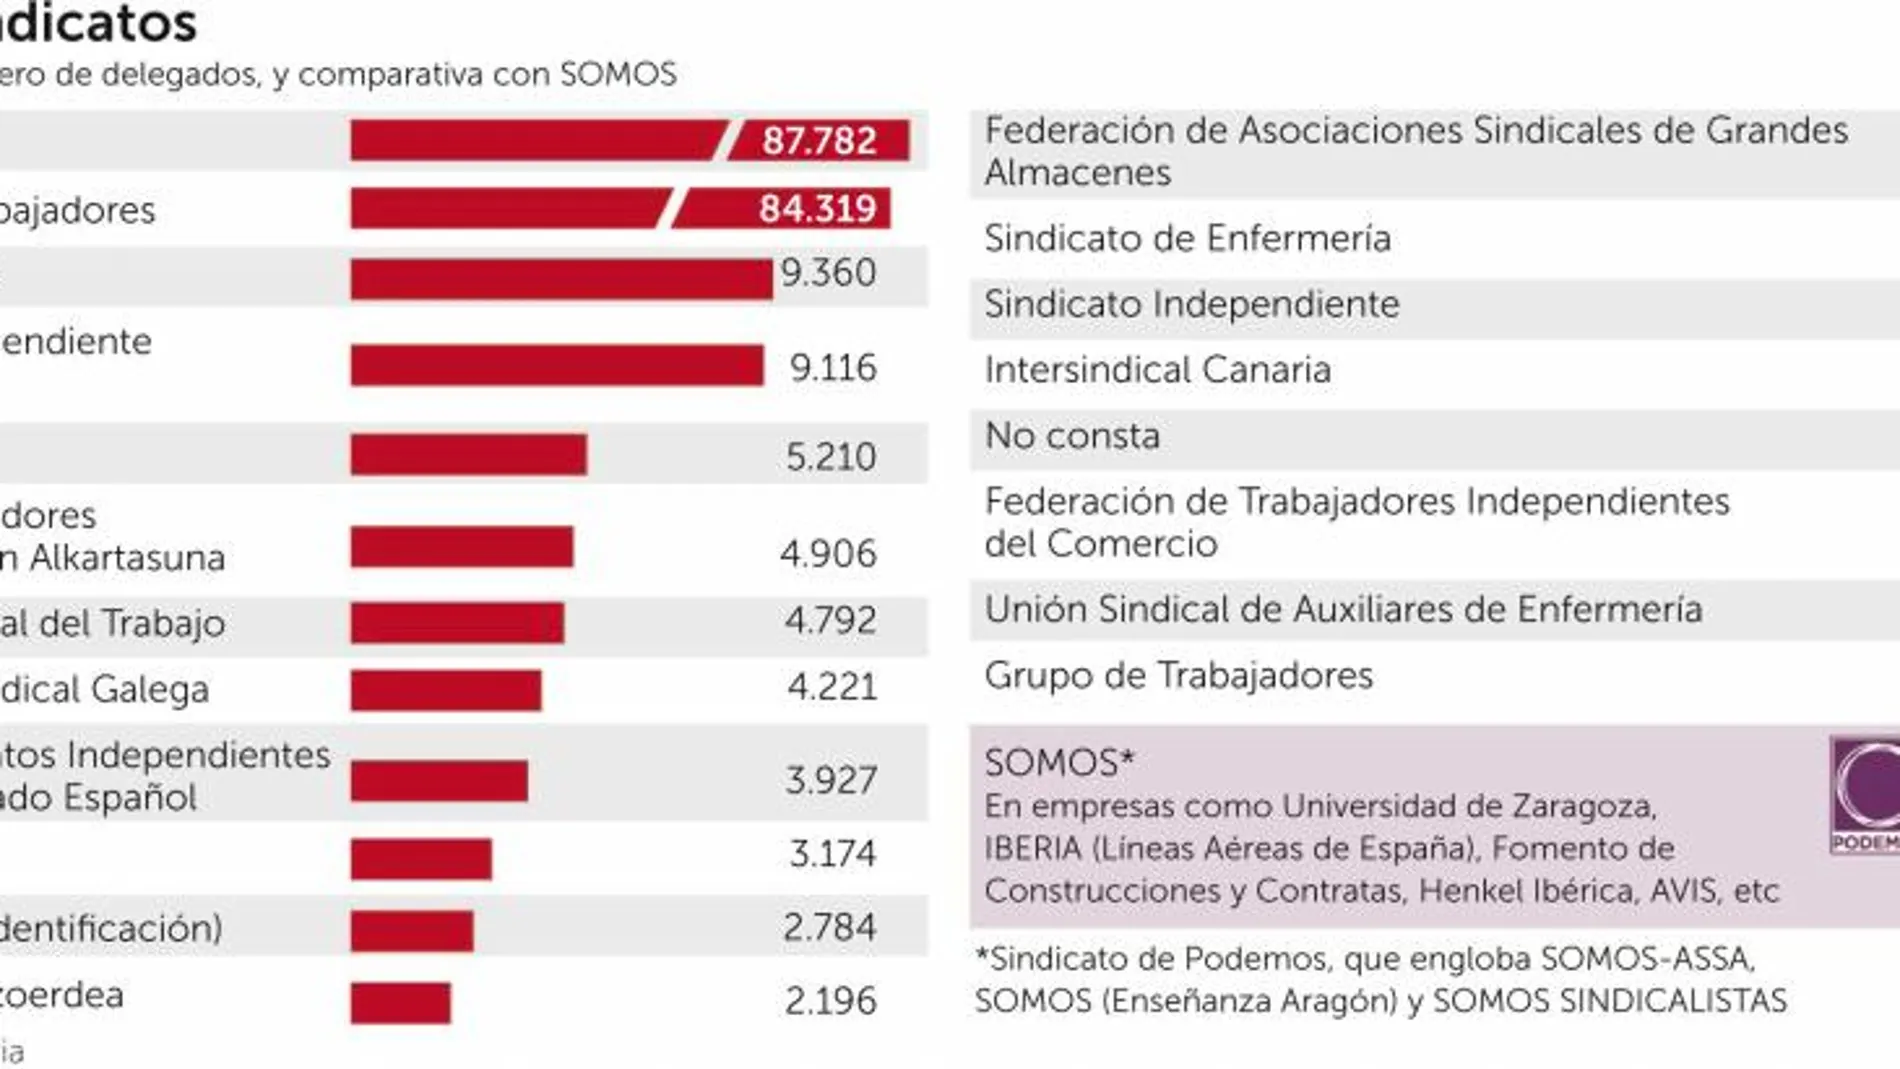 El sindicato de Podemos logra sólo un 0,1% de los delegados en las empresas